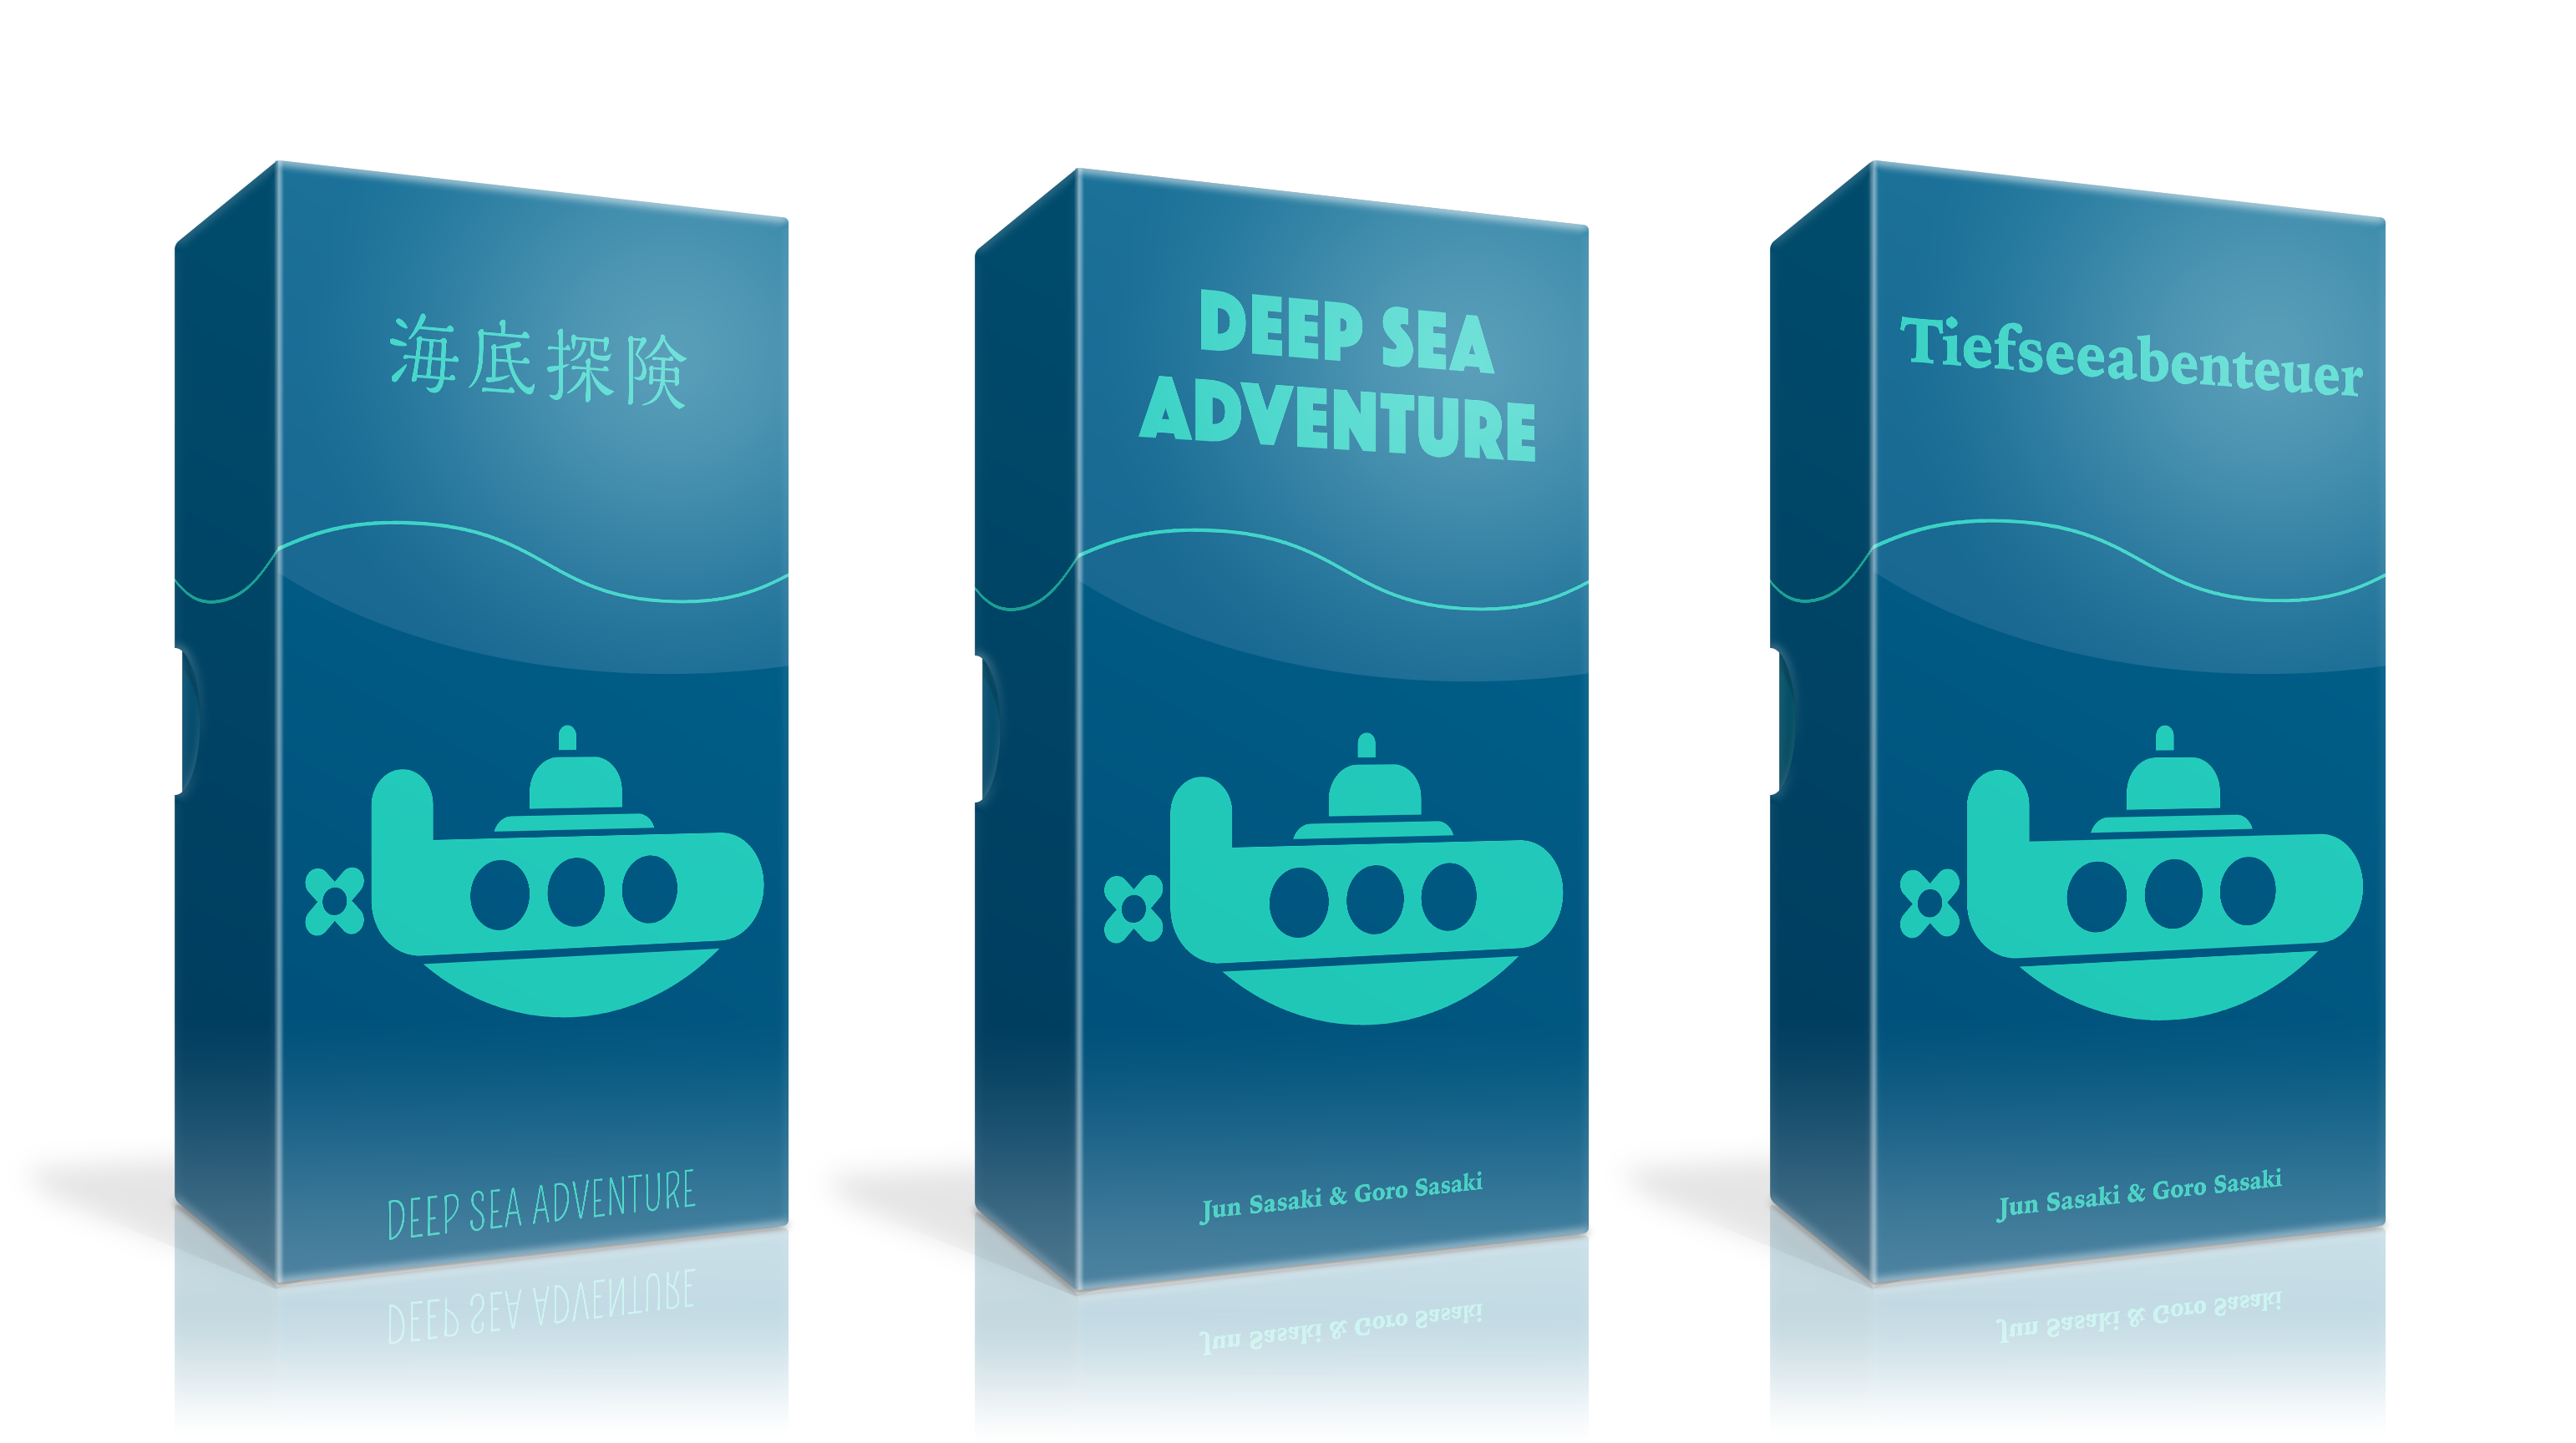 ボードゲーム 海底探険 が全世界で万部を突破 株式会社オインクゲームズのプレスリリース